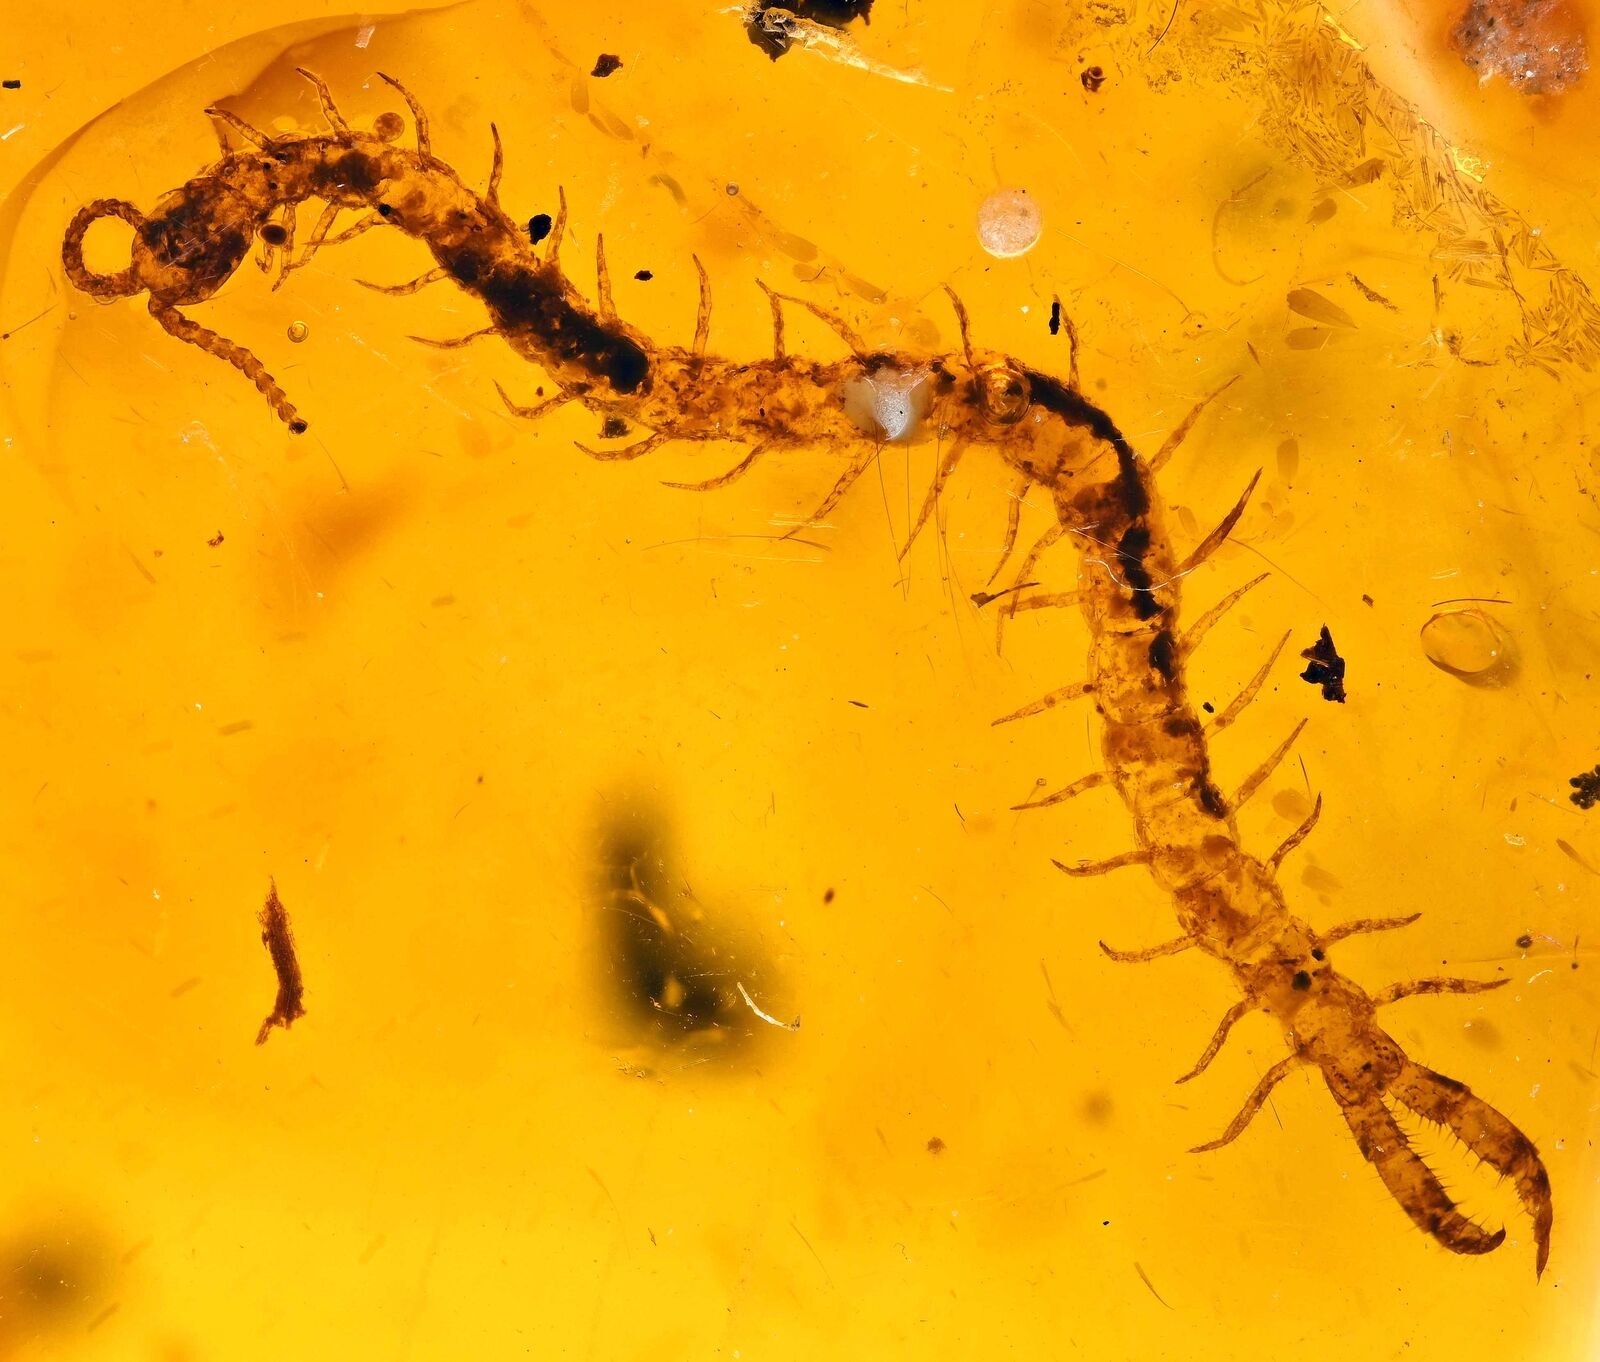 Complete Myriapoda (Centipede), Fossil Inclusion in Dominican Amber